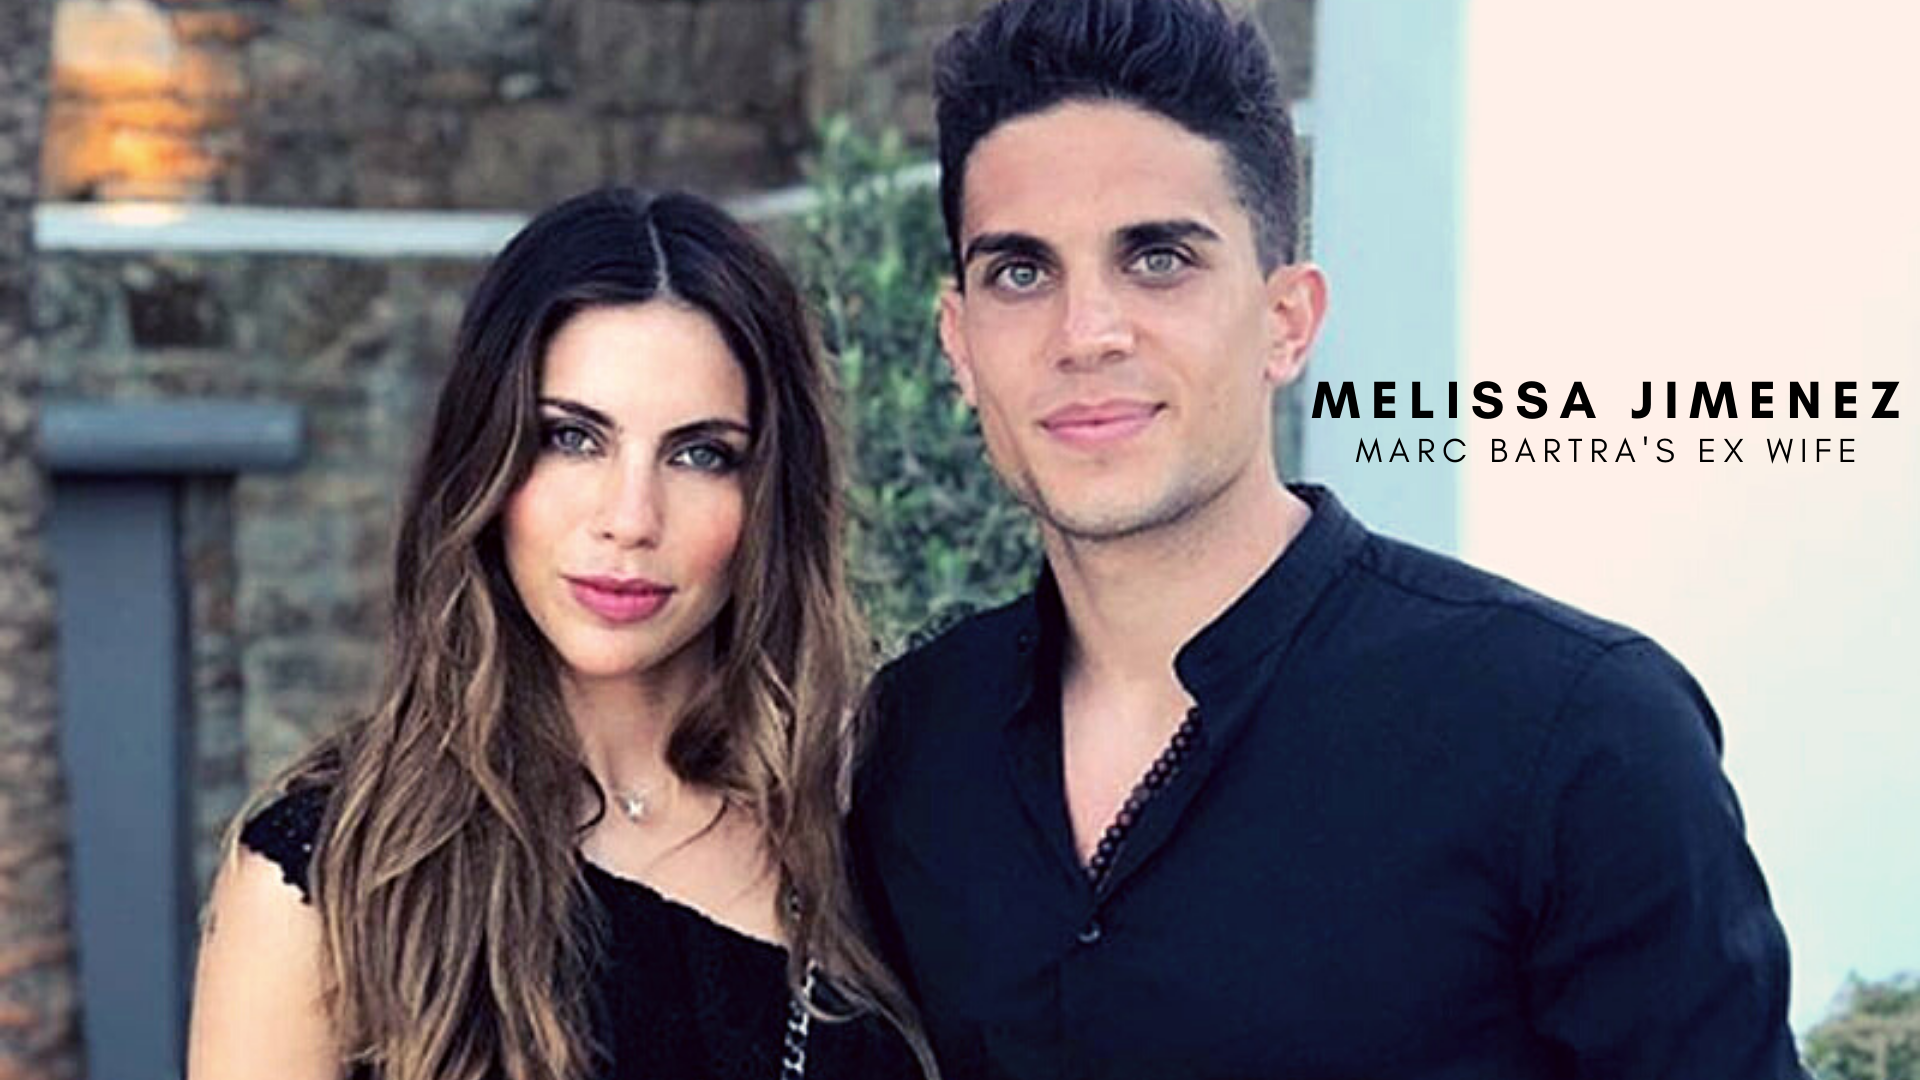 Marc Bartra with ex wife Melissa Jimenez. (Credit: Instagram)